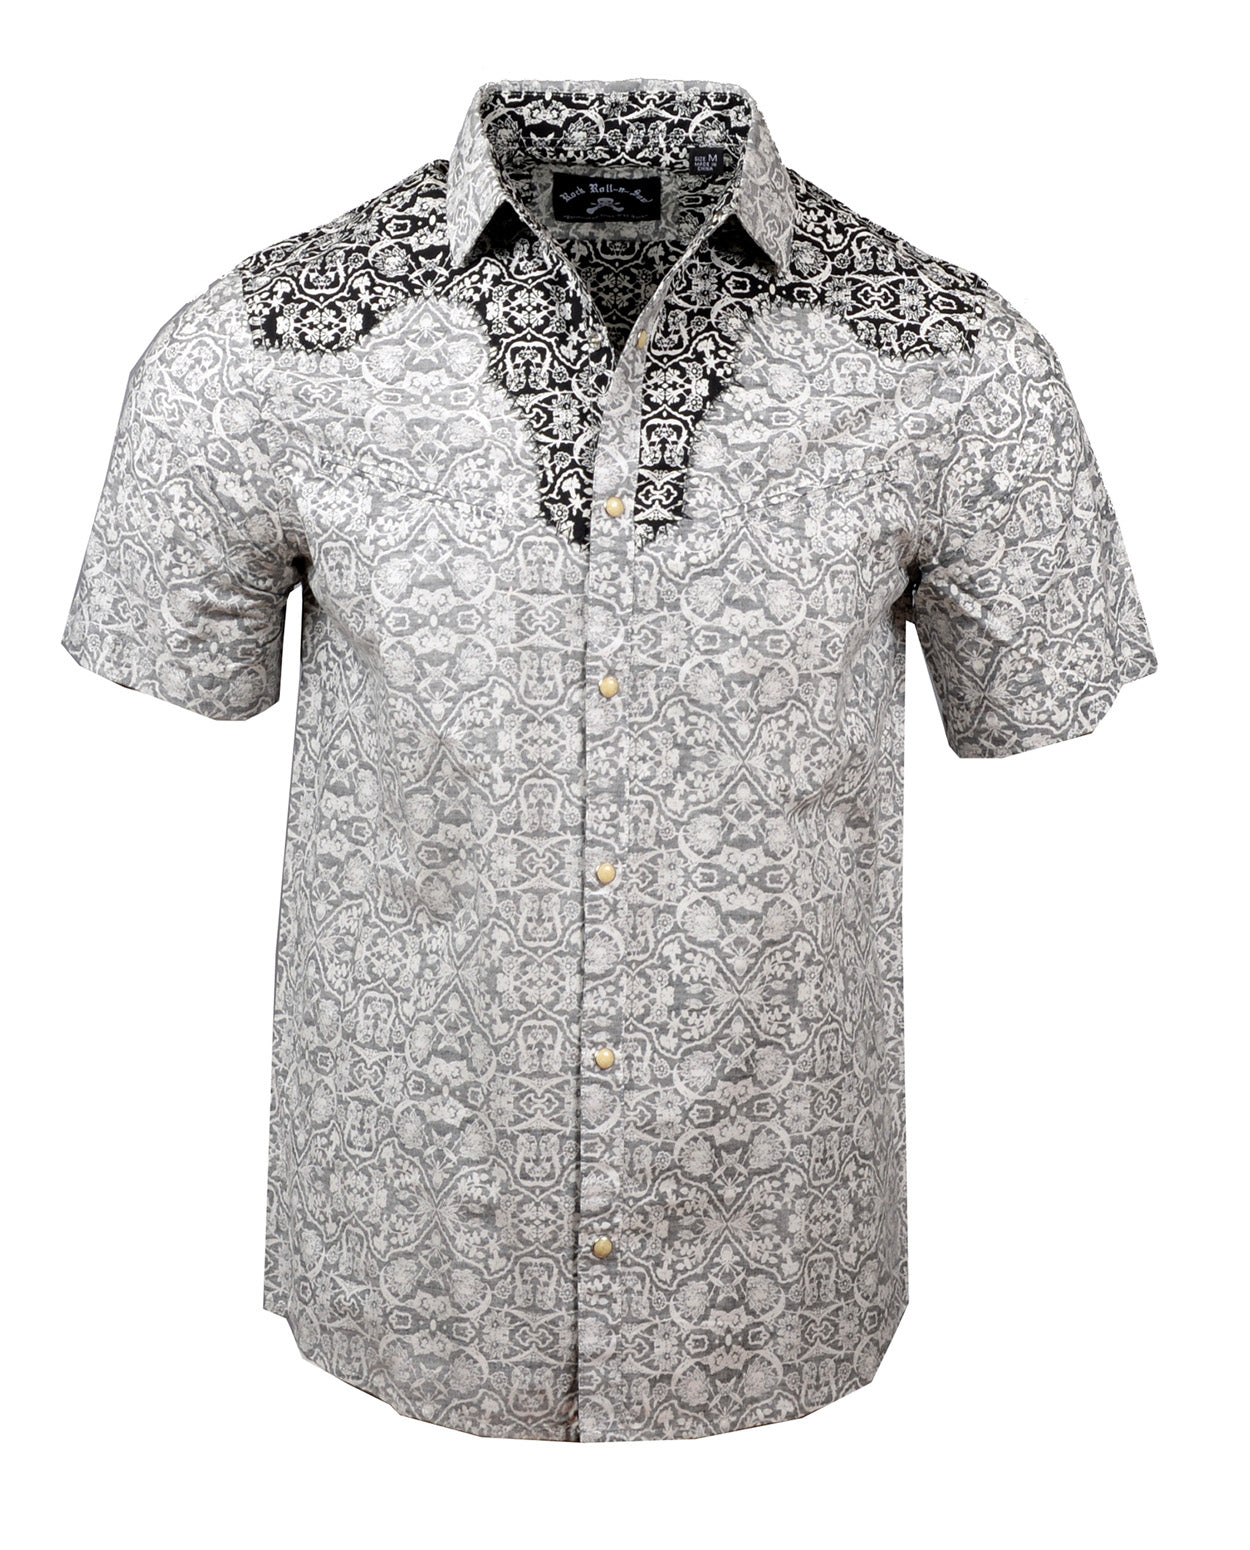 Men's Western Button Up Shirt - S/S Falling in Reverse by Rock Roll n Soul